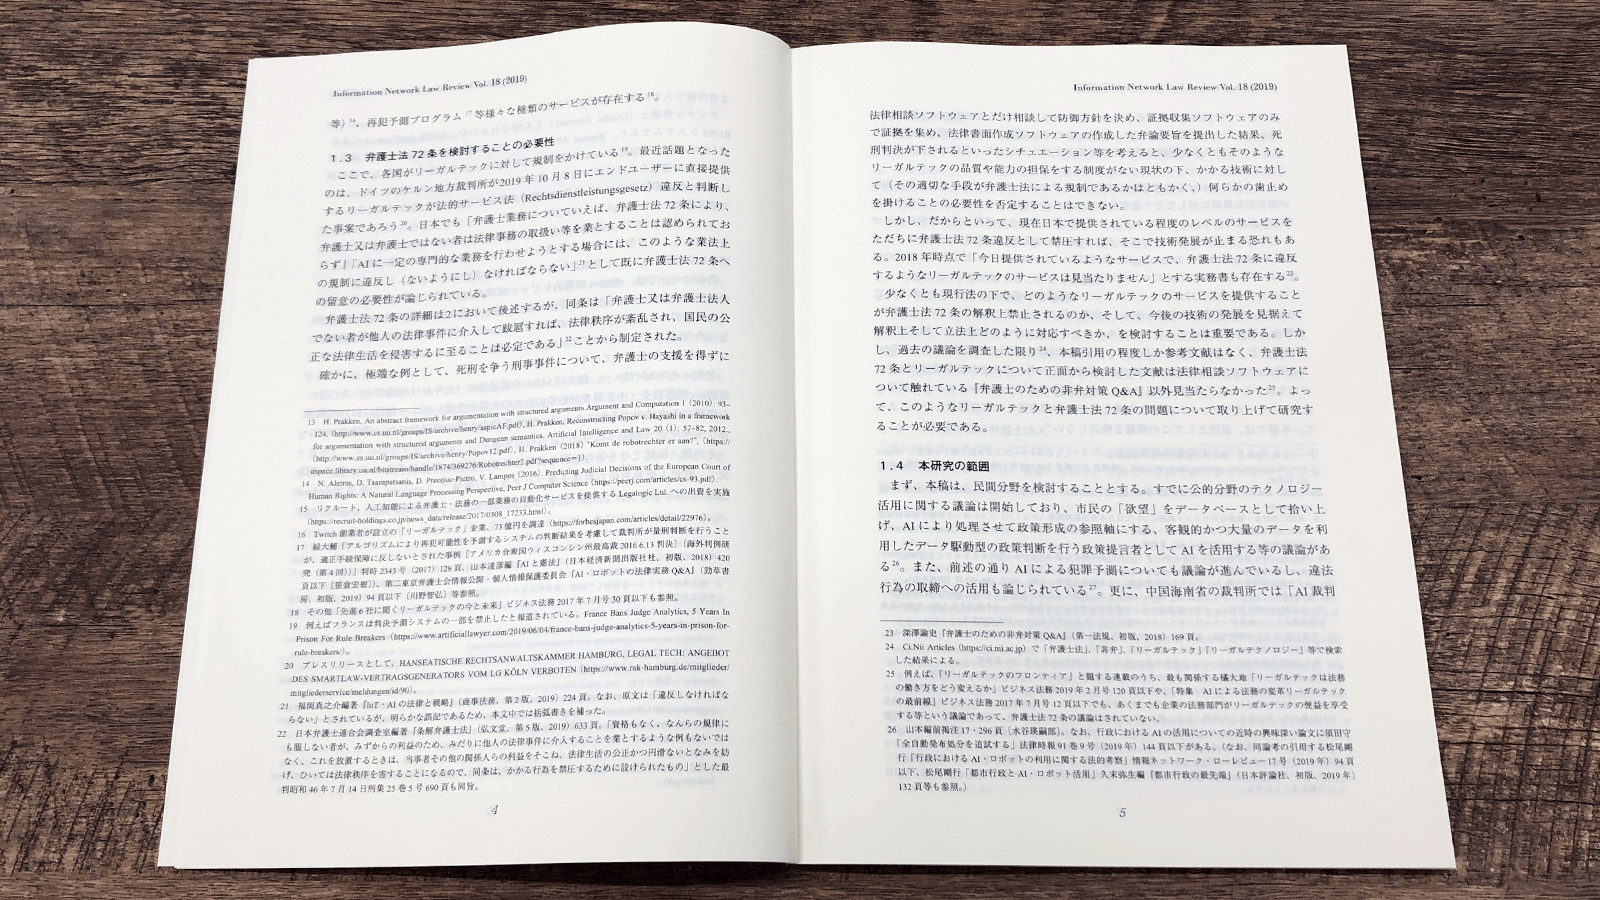 「情報ネットワーク・ローレビュー 第18巻」（情報ネットワーク法学会,2019）P4-5